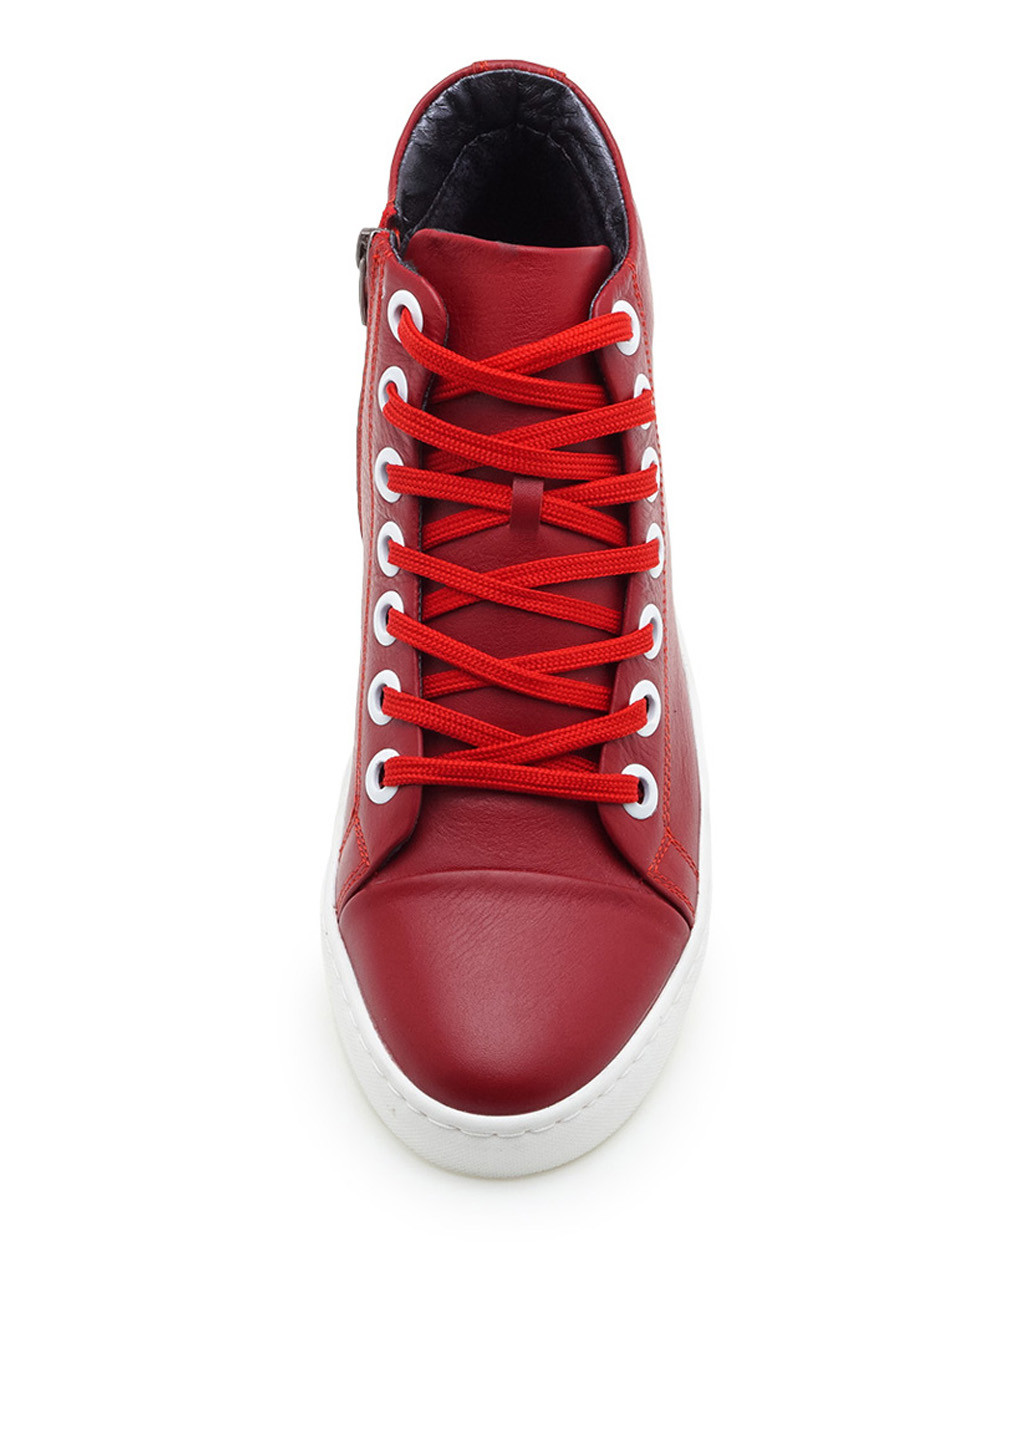 Красные осенние ботинки Broni